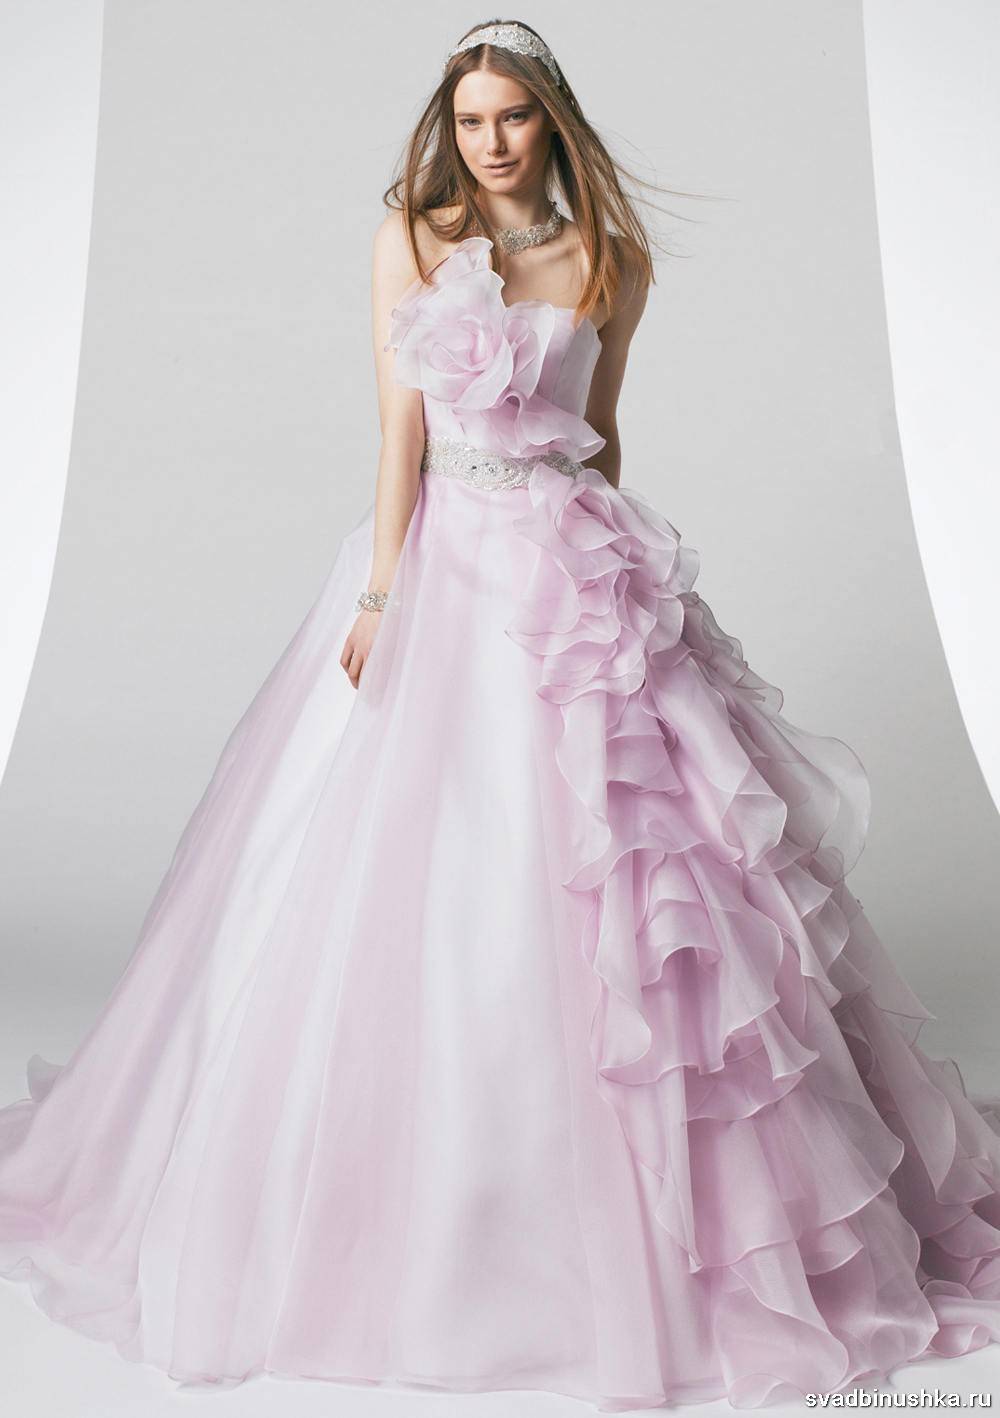 Цветные свадебные платья: трендовые оттенки, советы по выбору и фото стильных нарядов